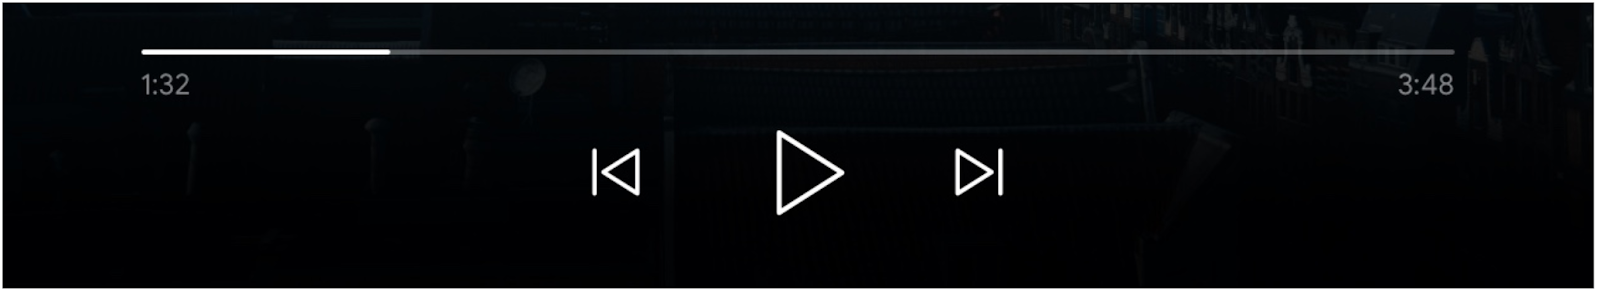 Obraz elementów sterujących odtwarzaczem: pasek postępu, przycisk „Odtwórz” oraz przyciski „Poprzednia kolejka” i „Następny w kolejce” są włączone